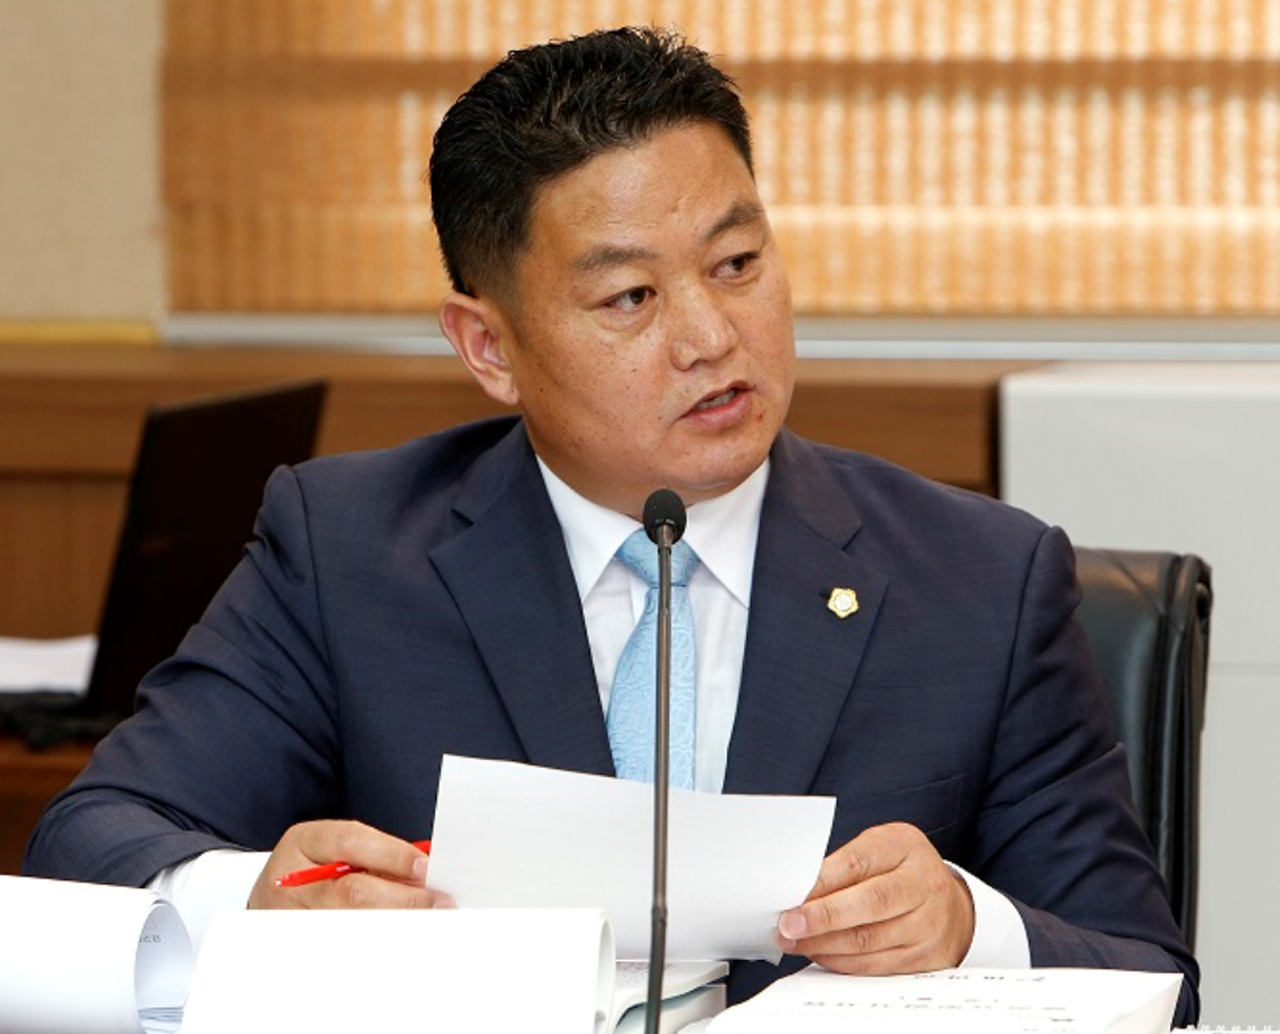 태안군의회 김영인 의원이 6.13지방선거를 85일 남겨둔 20일 자유한국당을 탈당했다. 김 의원은 무소속으로 6.13지방선거에 출마한다고 밝혔다.